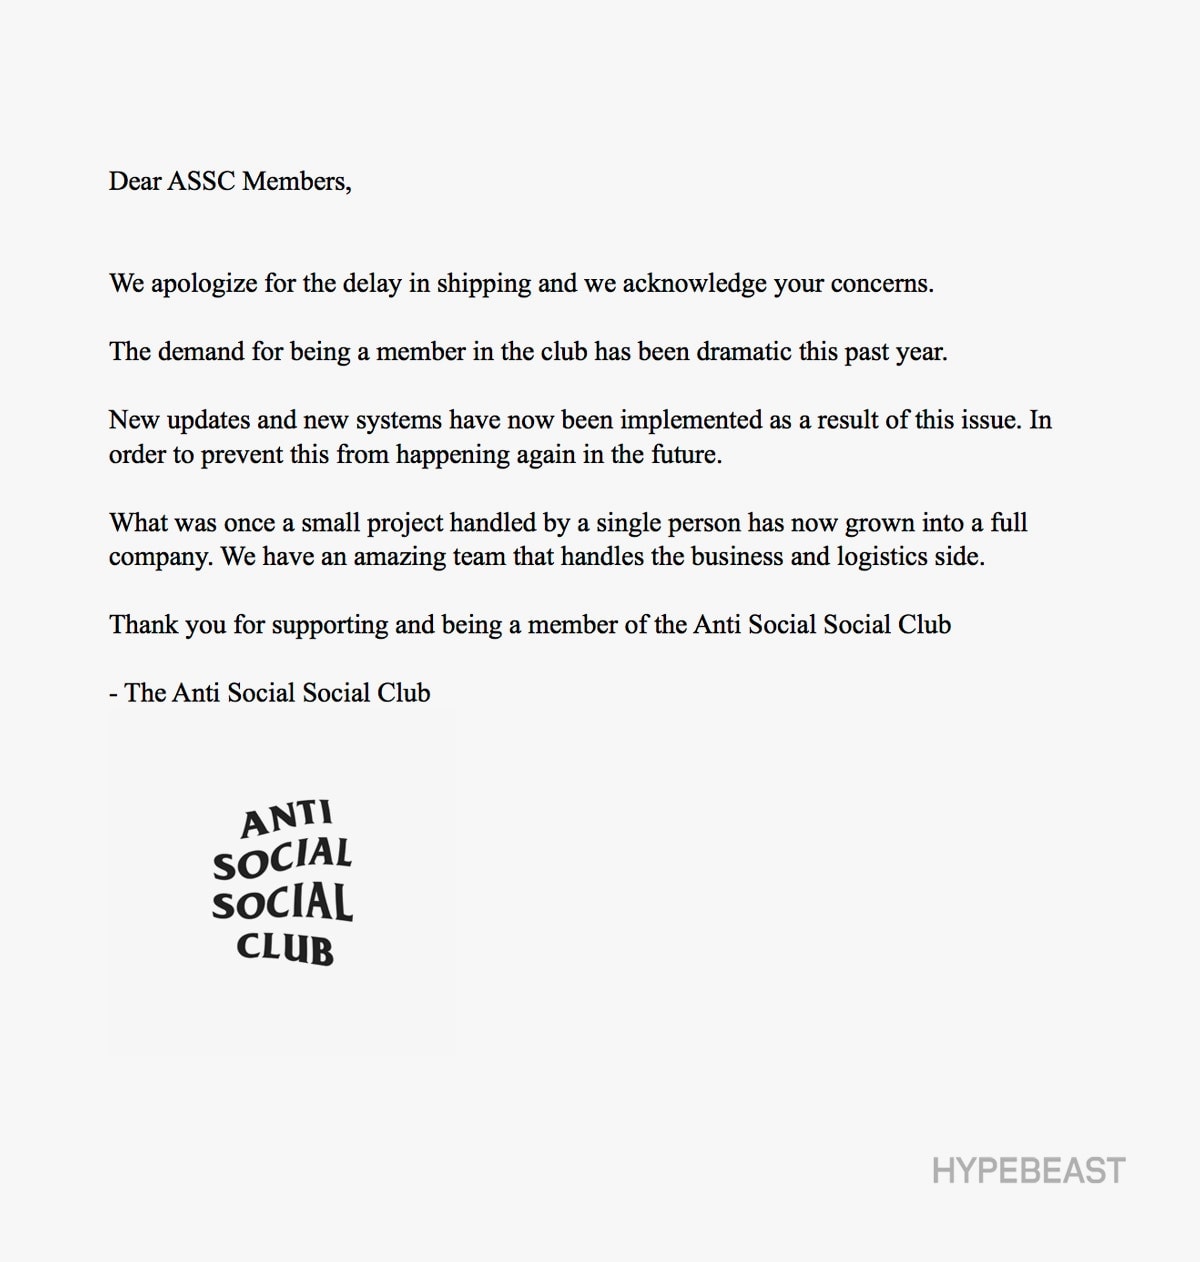 안티 소셜 소셜 클럽 배송 공식 사과문 2017 anti social social club official statement apology shipping issues assc